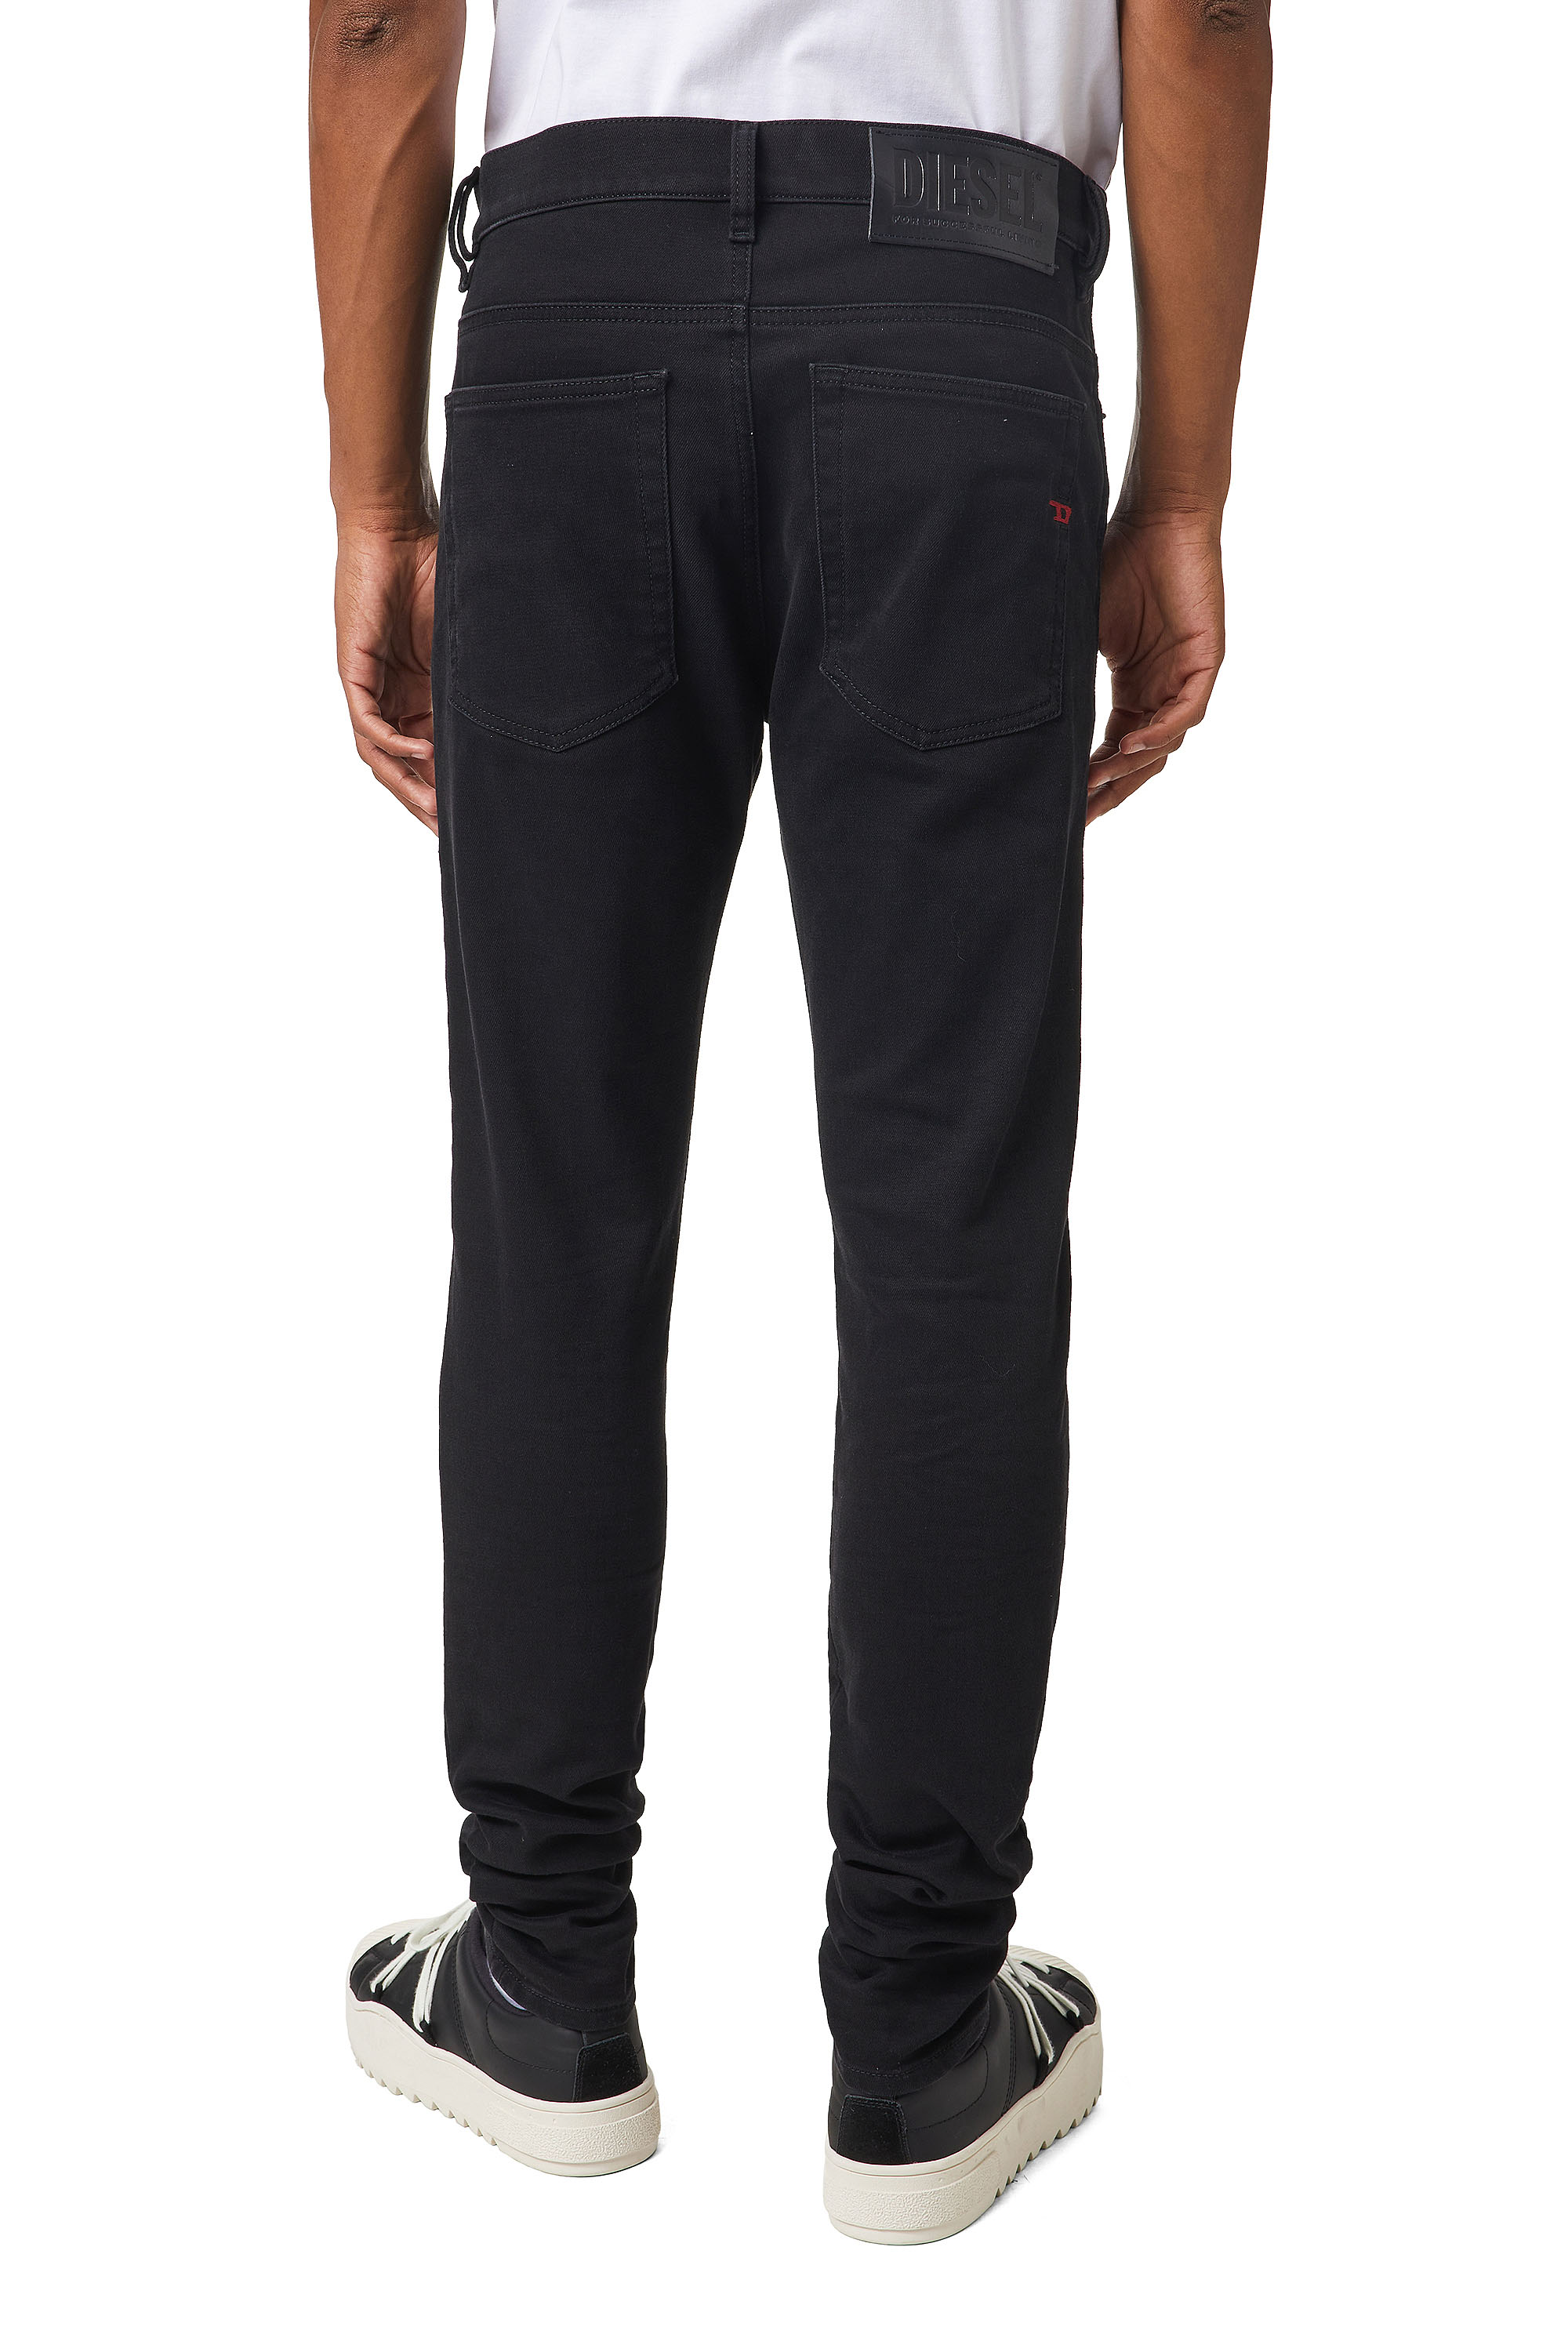 Diesel - D-Amny JoggJeans® Z9A29 Skinny, Black/Dark Grey - Image 2